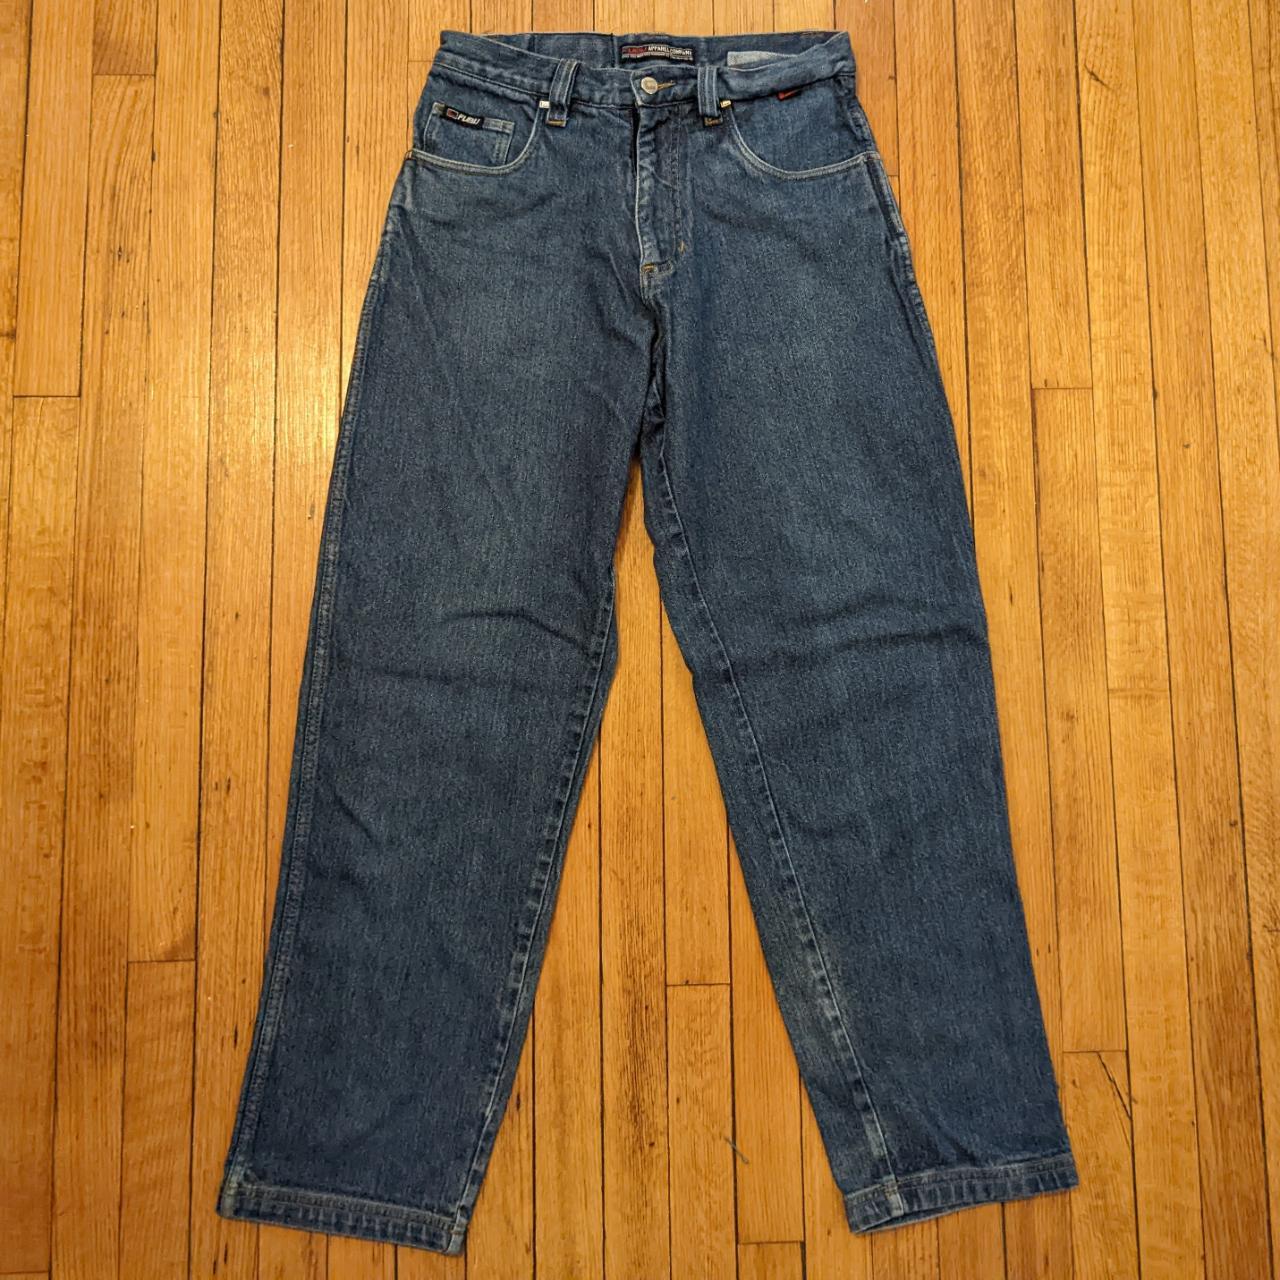 Vintage Fubu baggy jeans size 32 Pair of vintage... - Depop